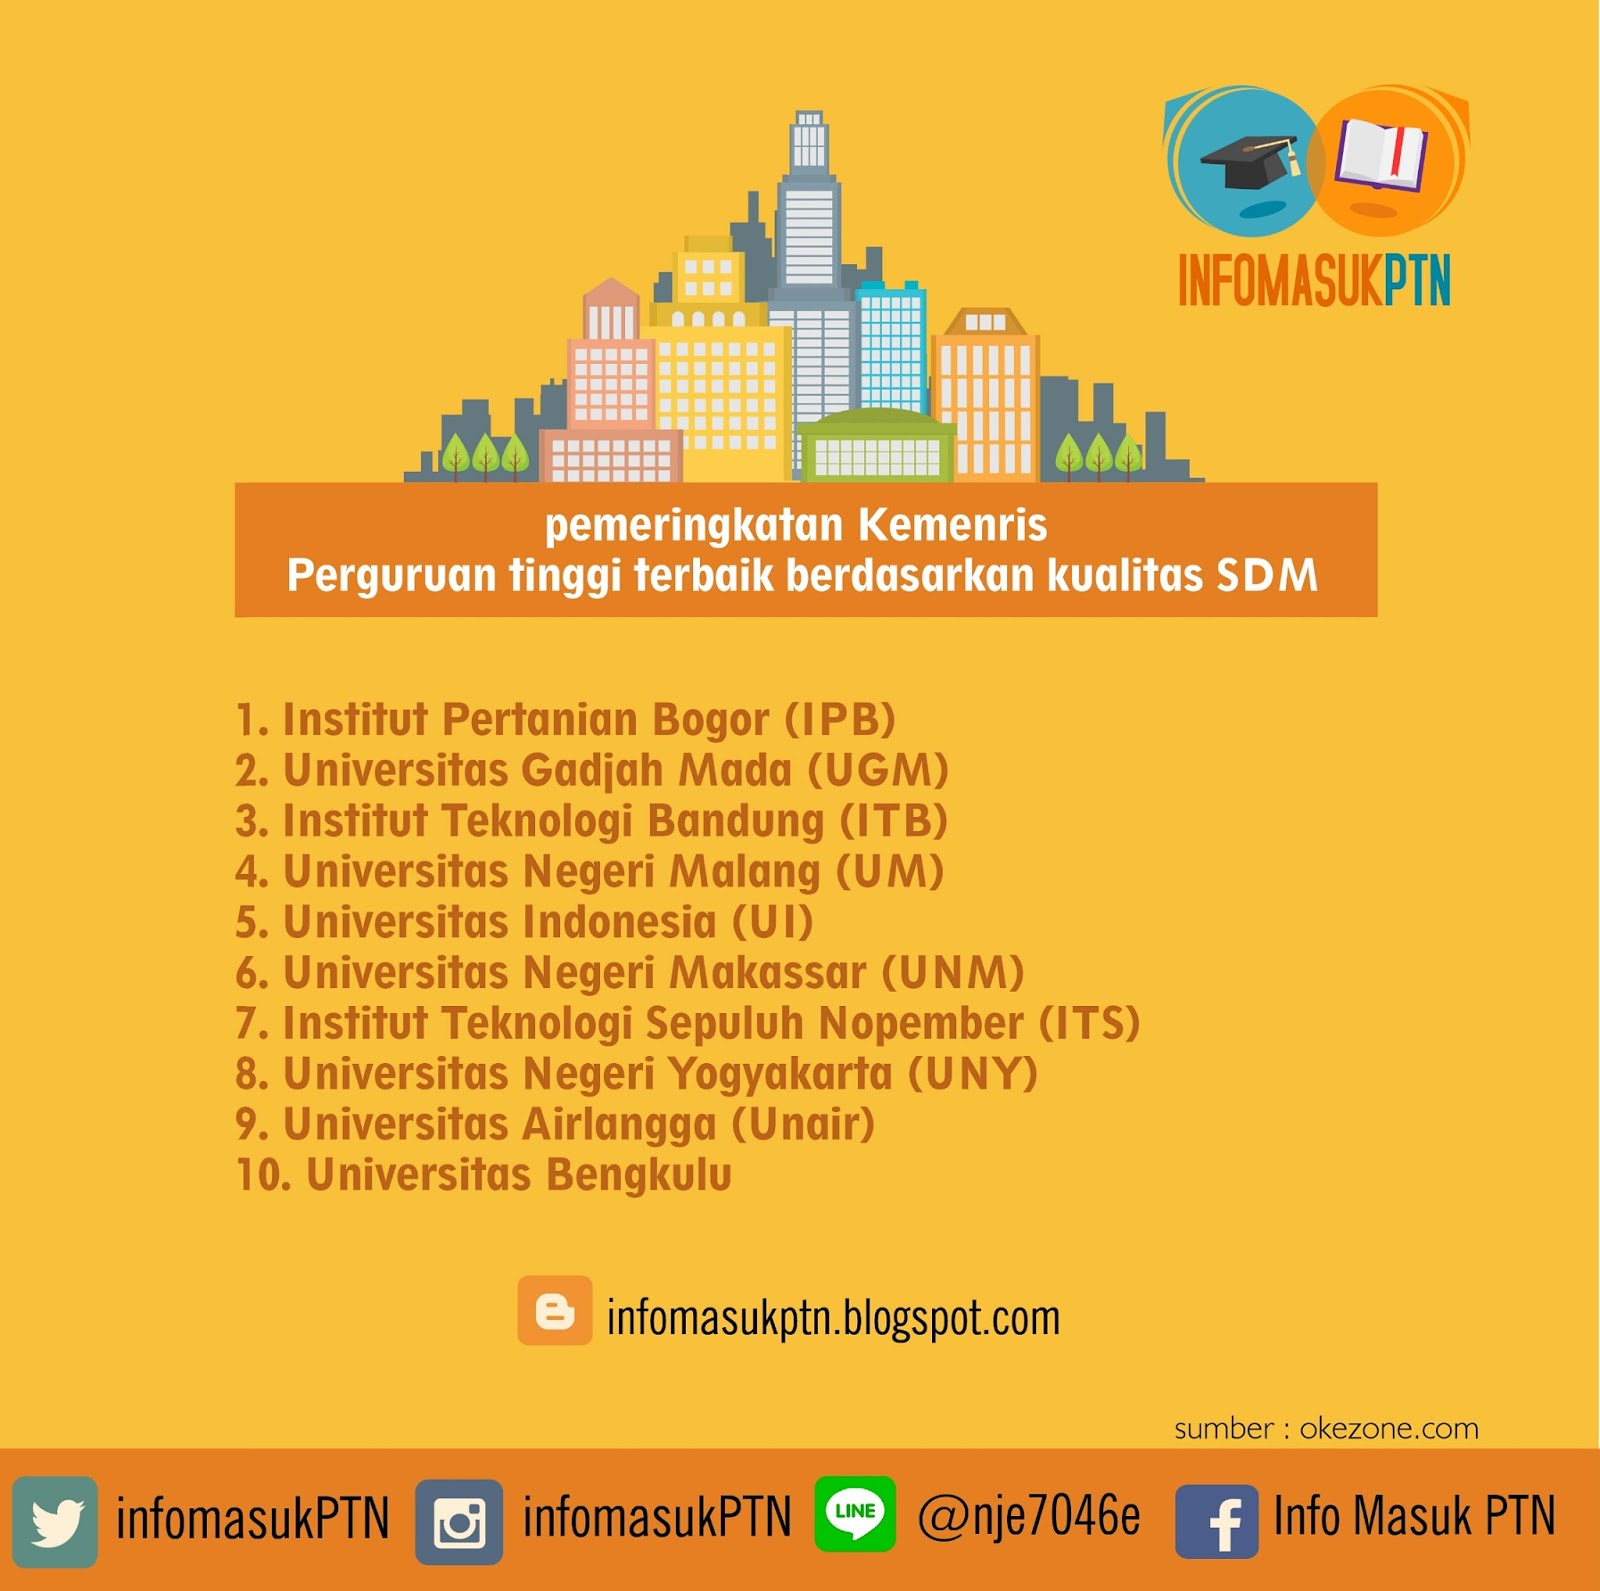 5 Universitas Indonesia UI 6 Universitas Negeri Makassar UNM 7 Institut Teknologi Sepuluh Nopember ITS 8